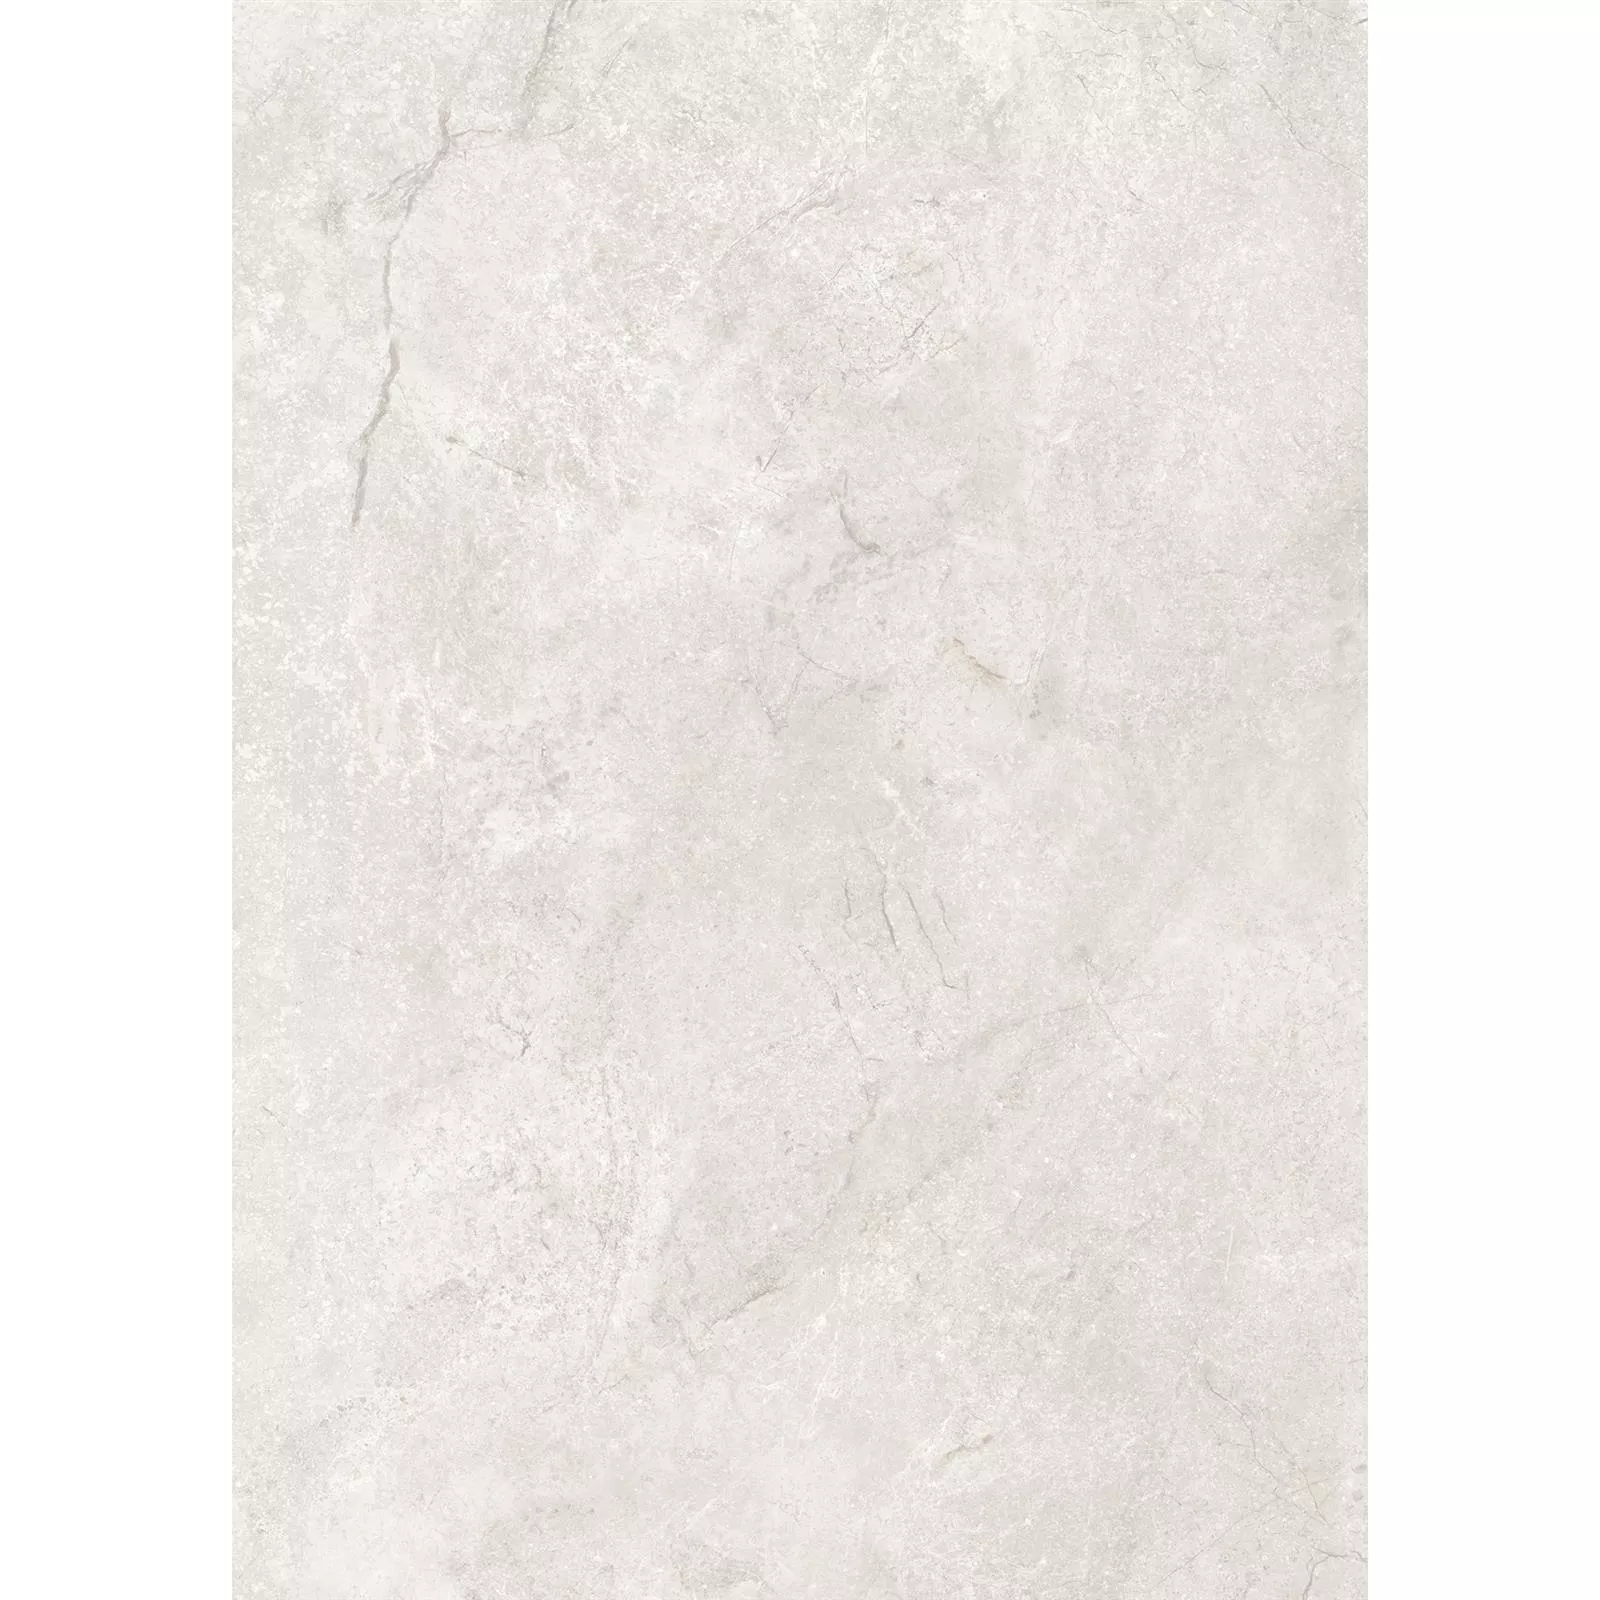 Ladrilho Noiron Fosco Polido Marfim 60x120cm